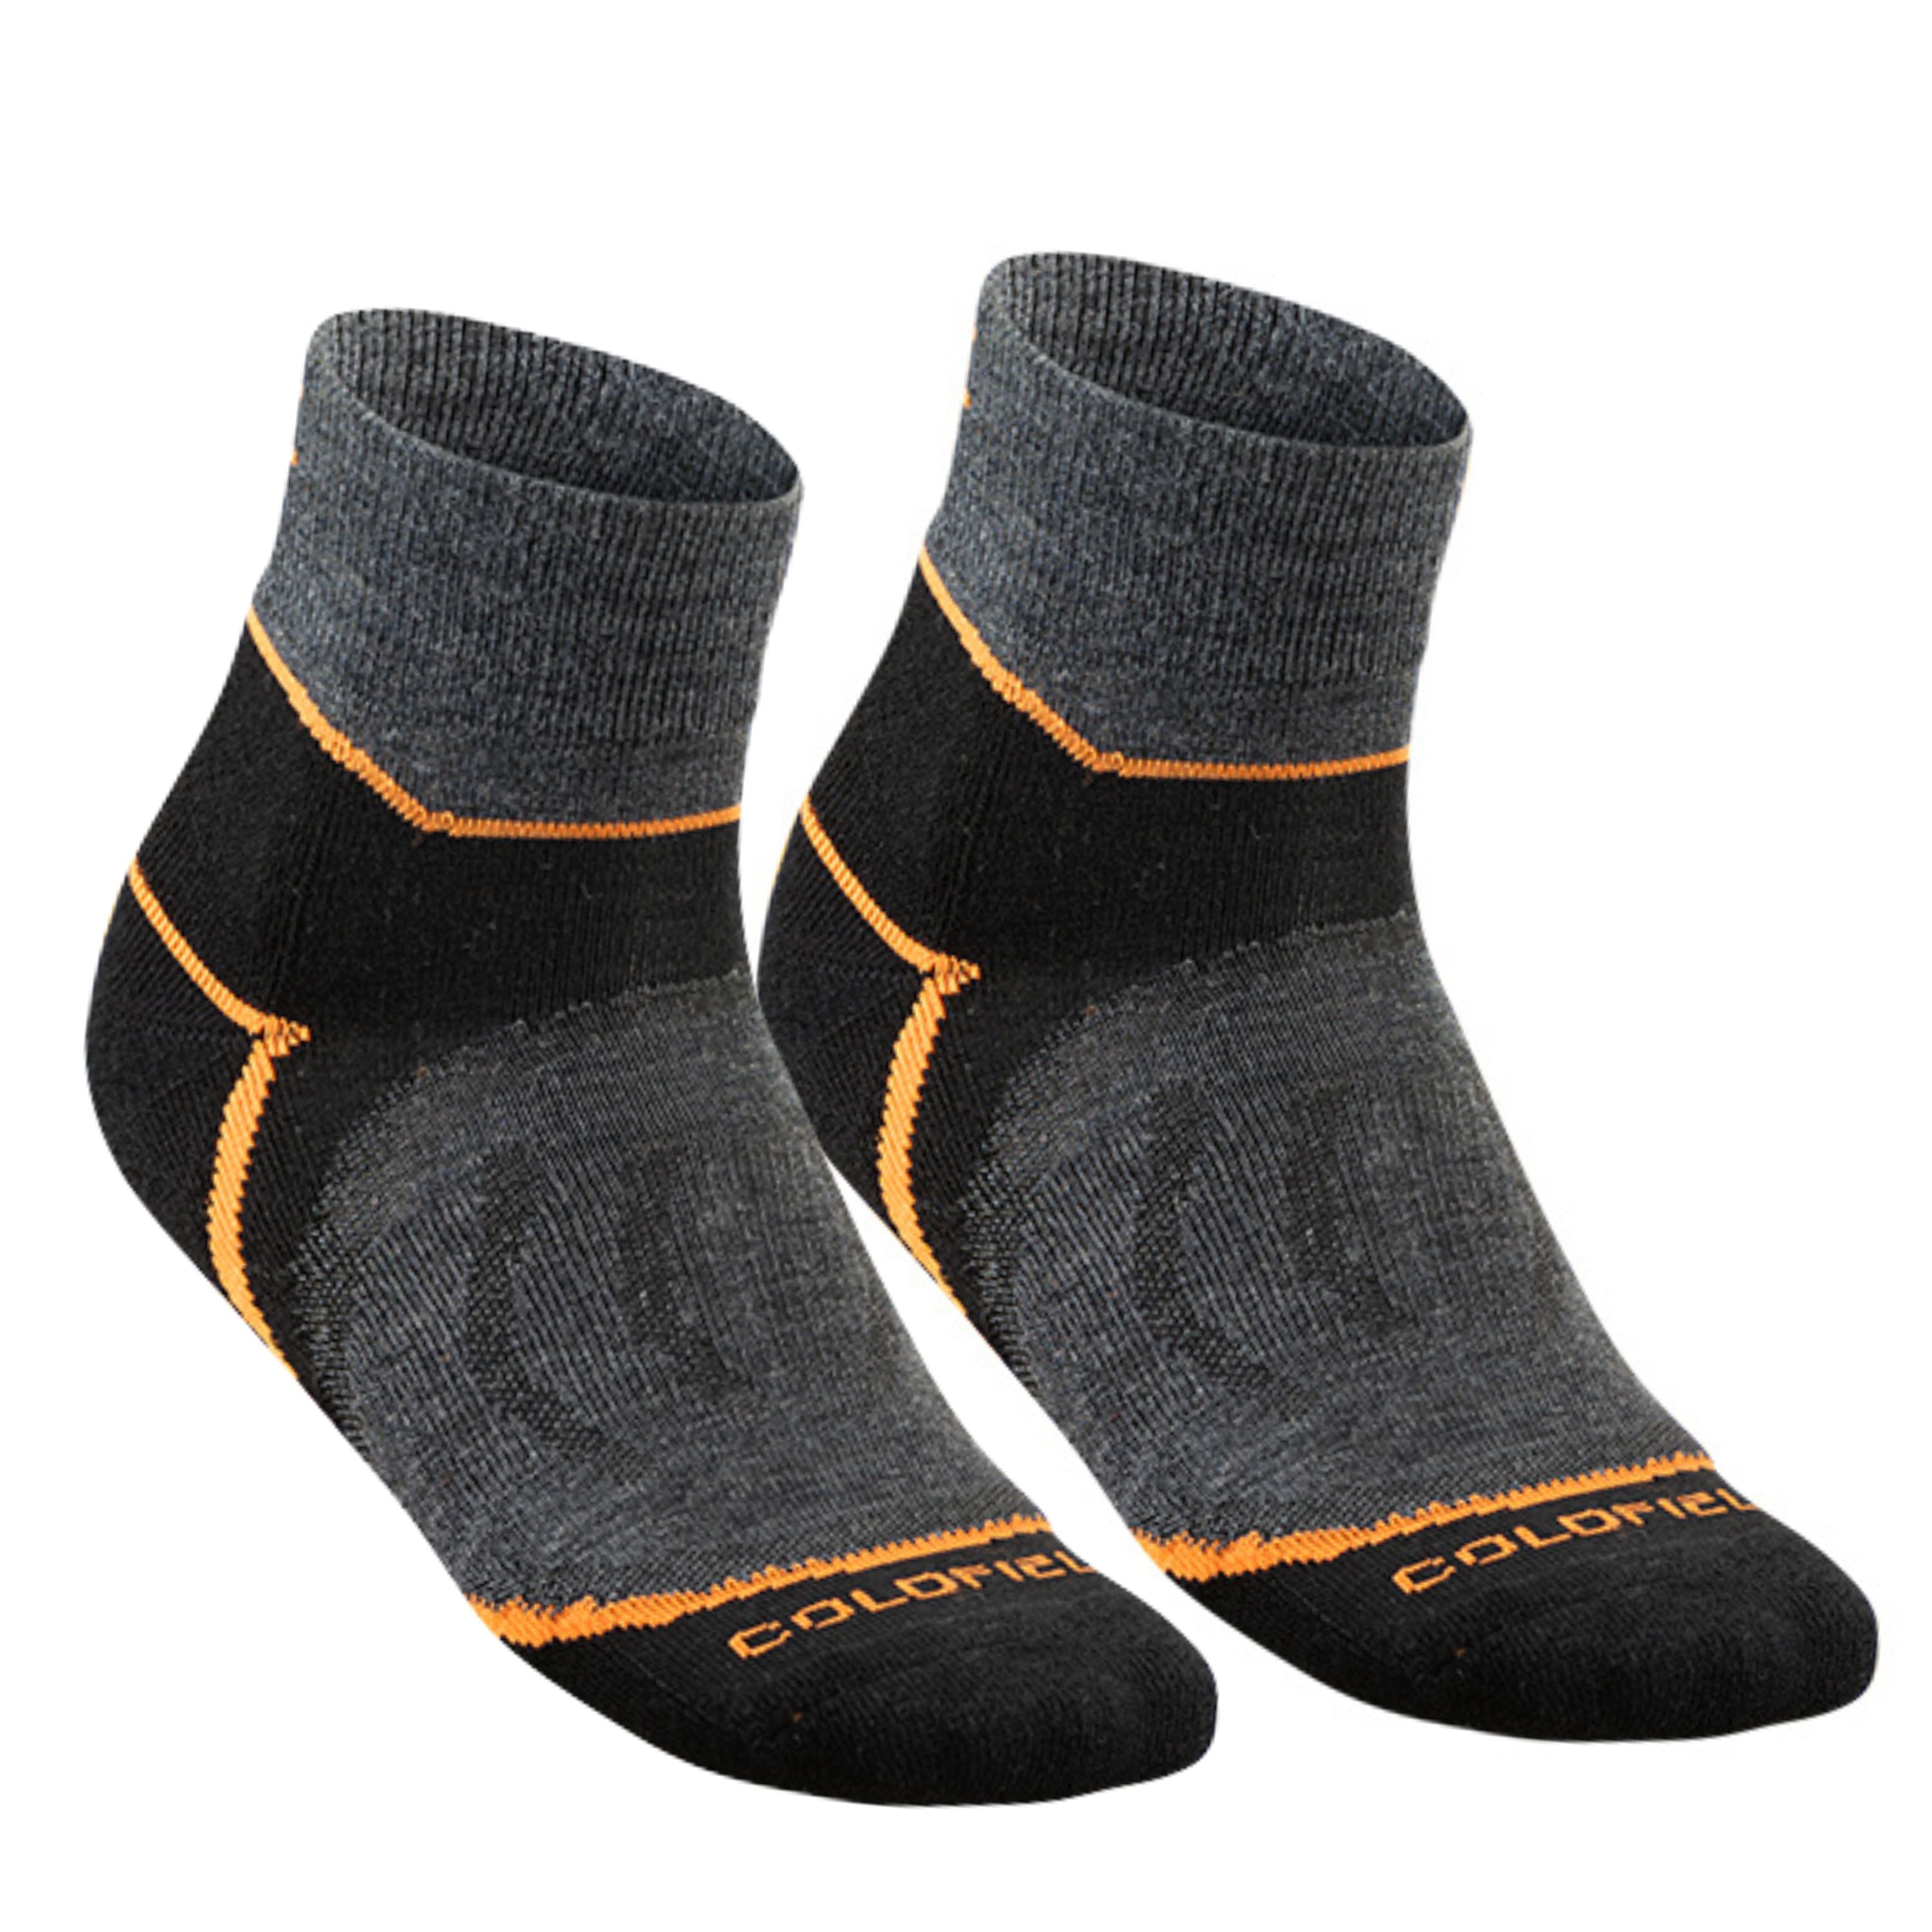 Merinos short socks - Men's